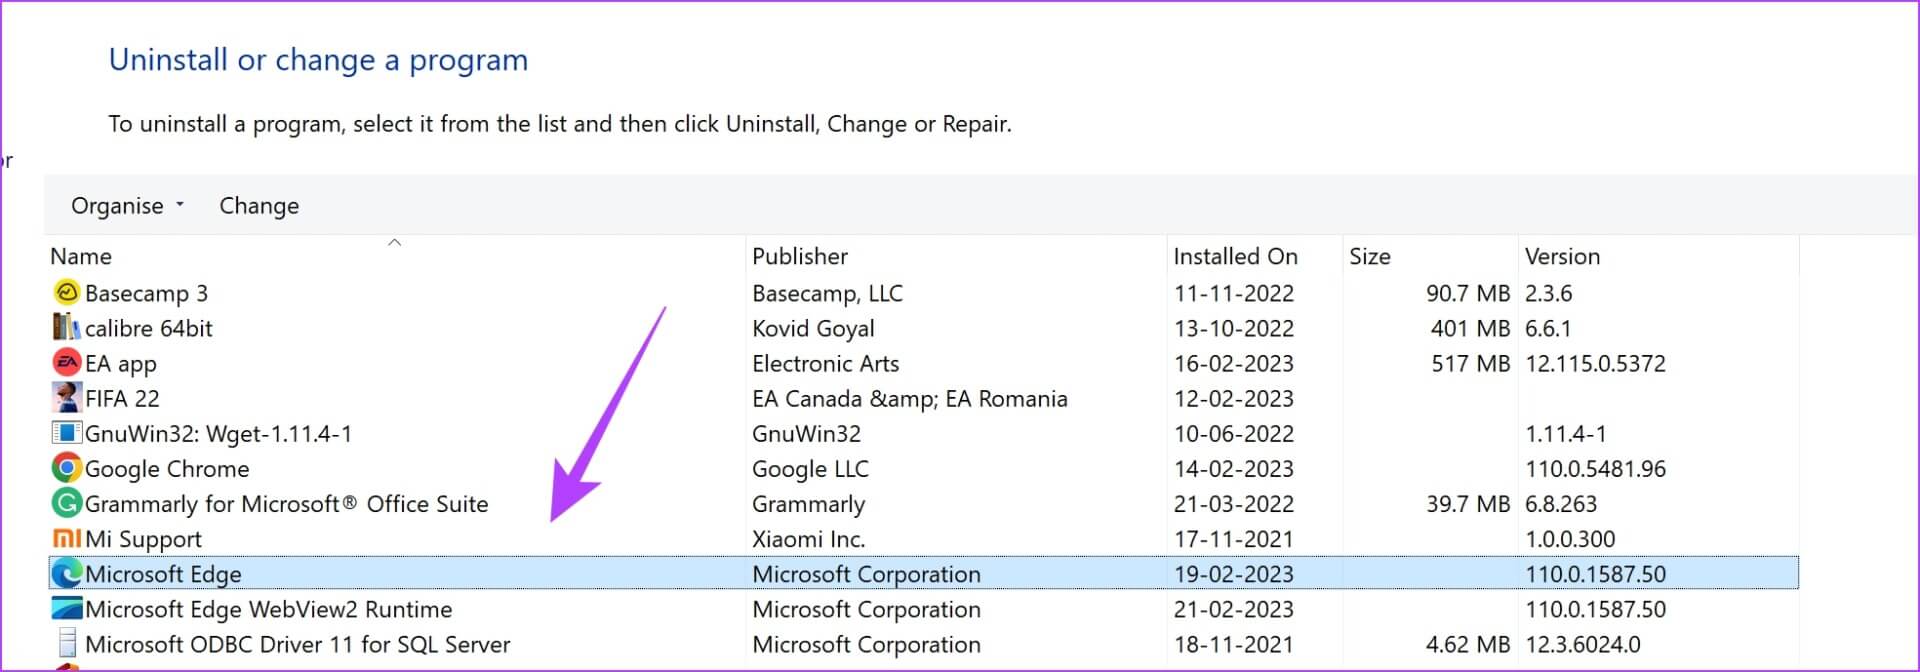 أفضل 10 إصلاحات لخطأ الاتصال بهذا الموقع غير آمن على Edge على Windows - %categories